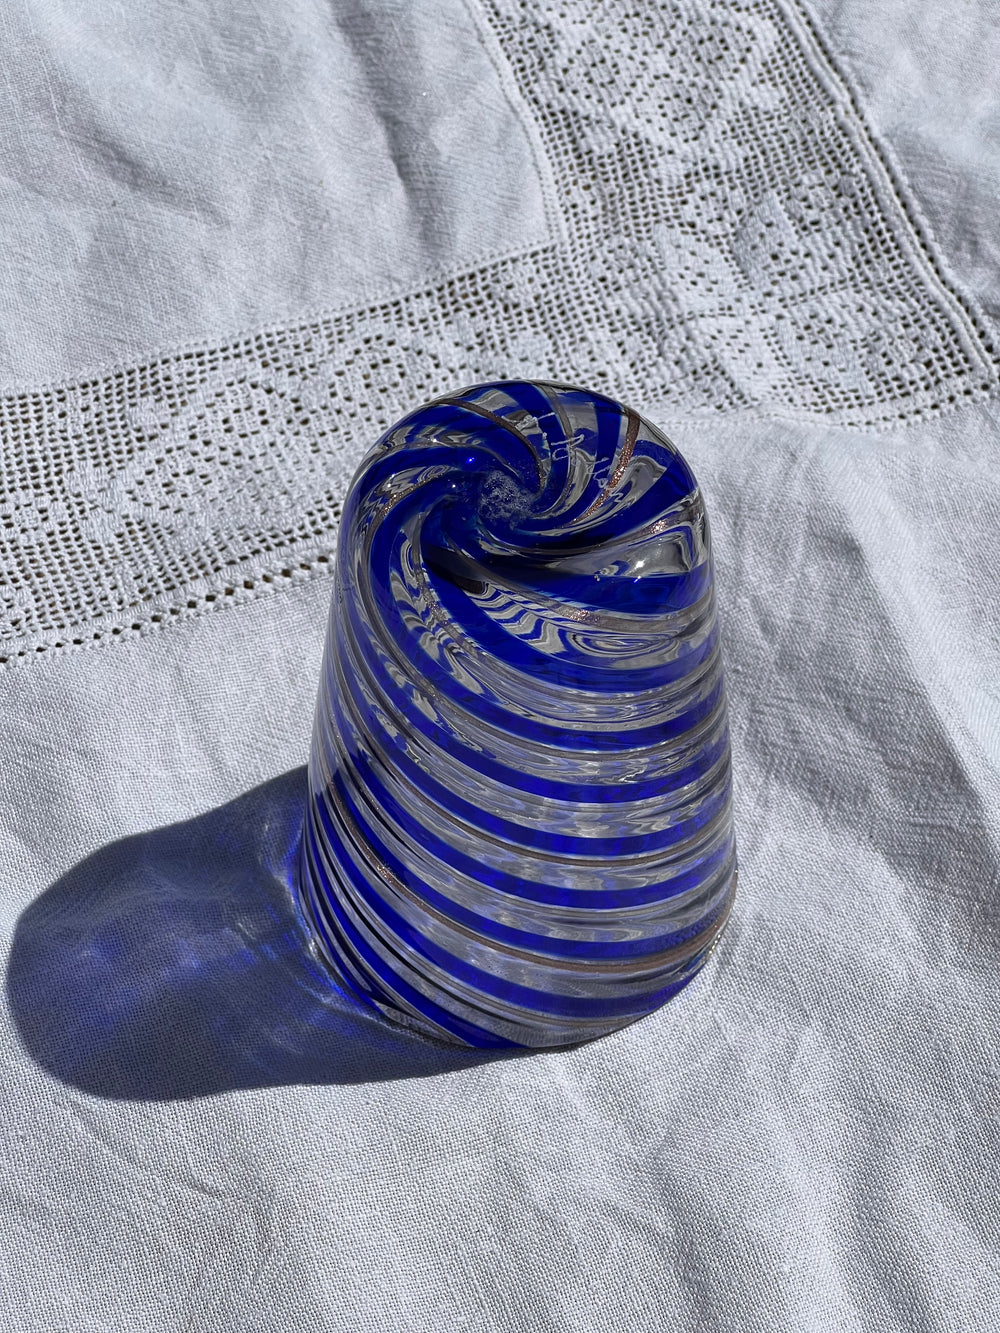 Håndblæst Murano Glas med Swirlmønster i Mørkeblå og Rosa Murano